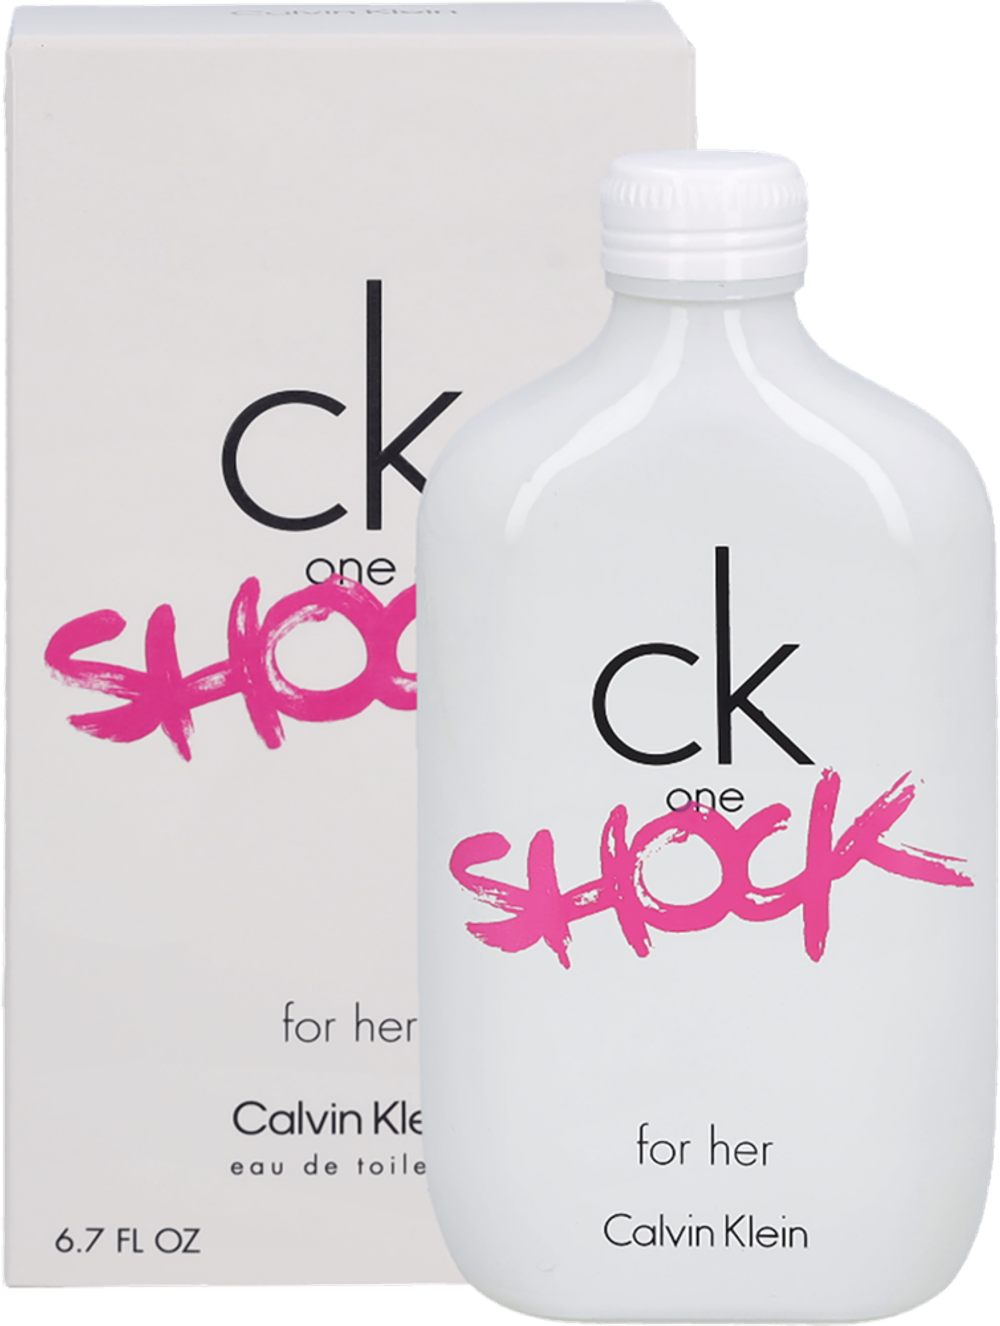 Tilbud på Calvin Klein Ck One Shock For Her Edt Spray fra Fleggaard til 150 kr.